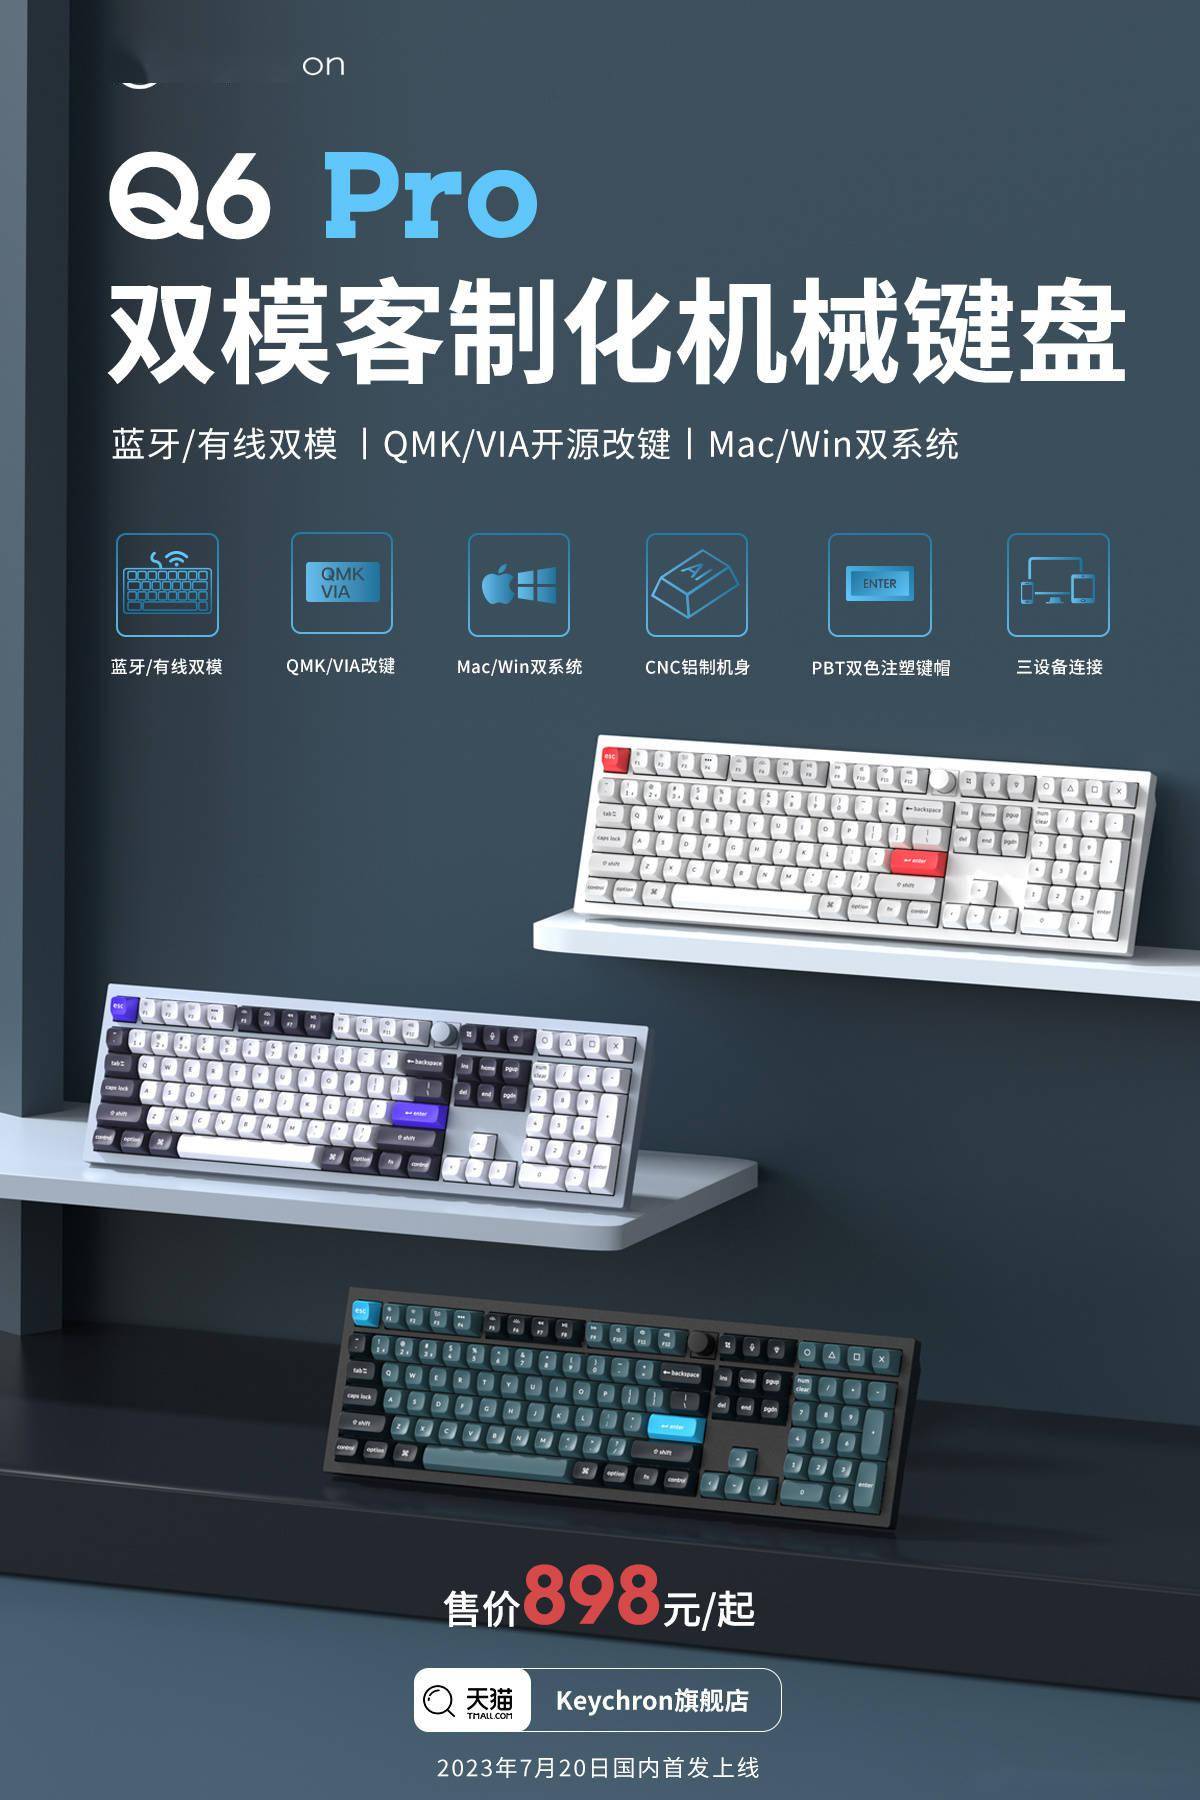 Keychron推出Q6 Pro双模客制化机械键盘：采用了100%布局 全金属结构设计